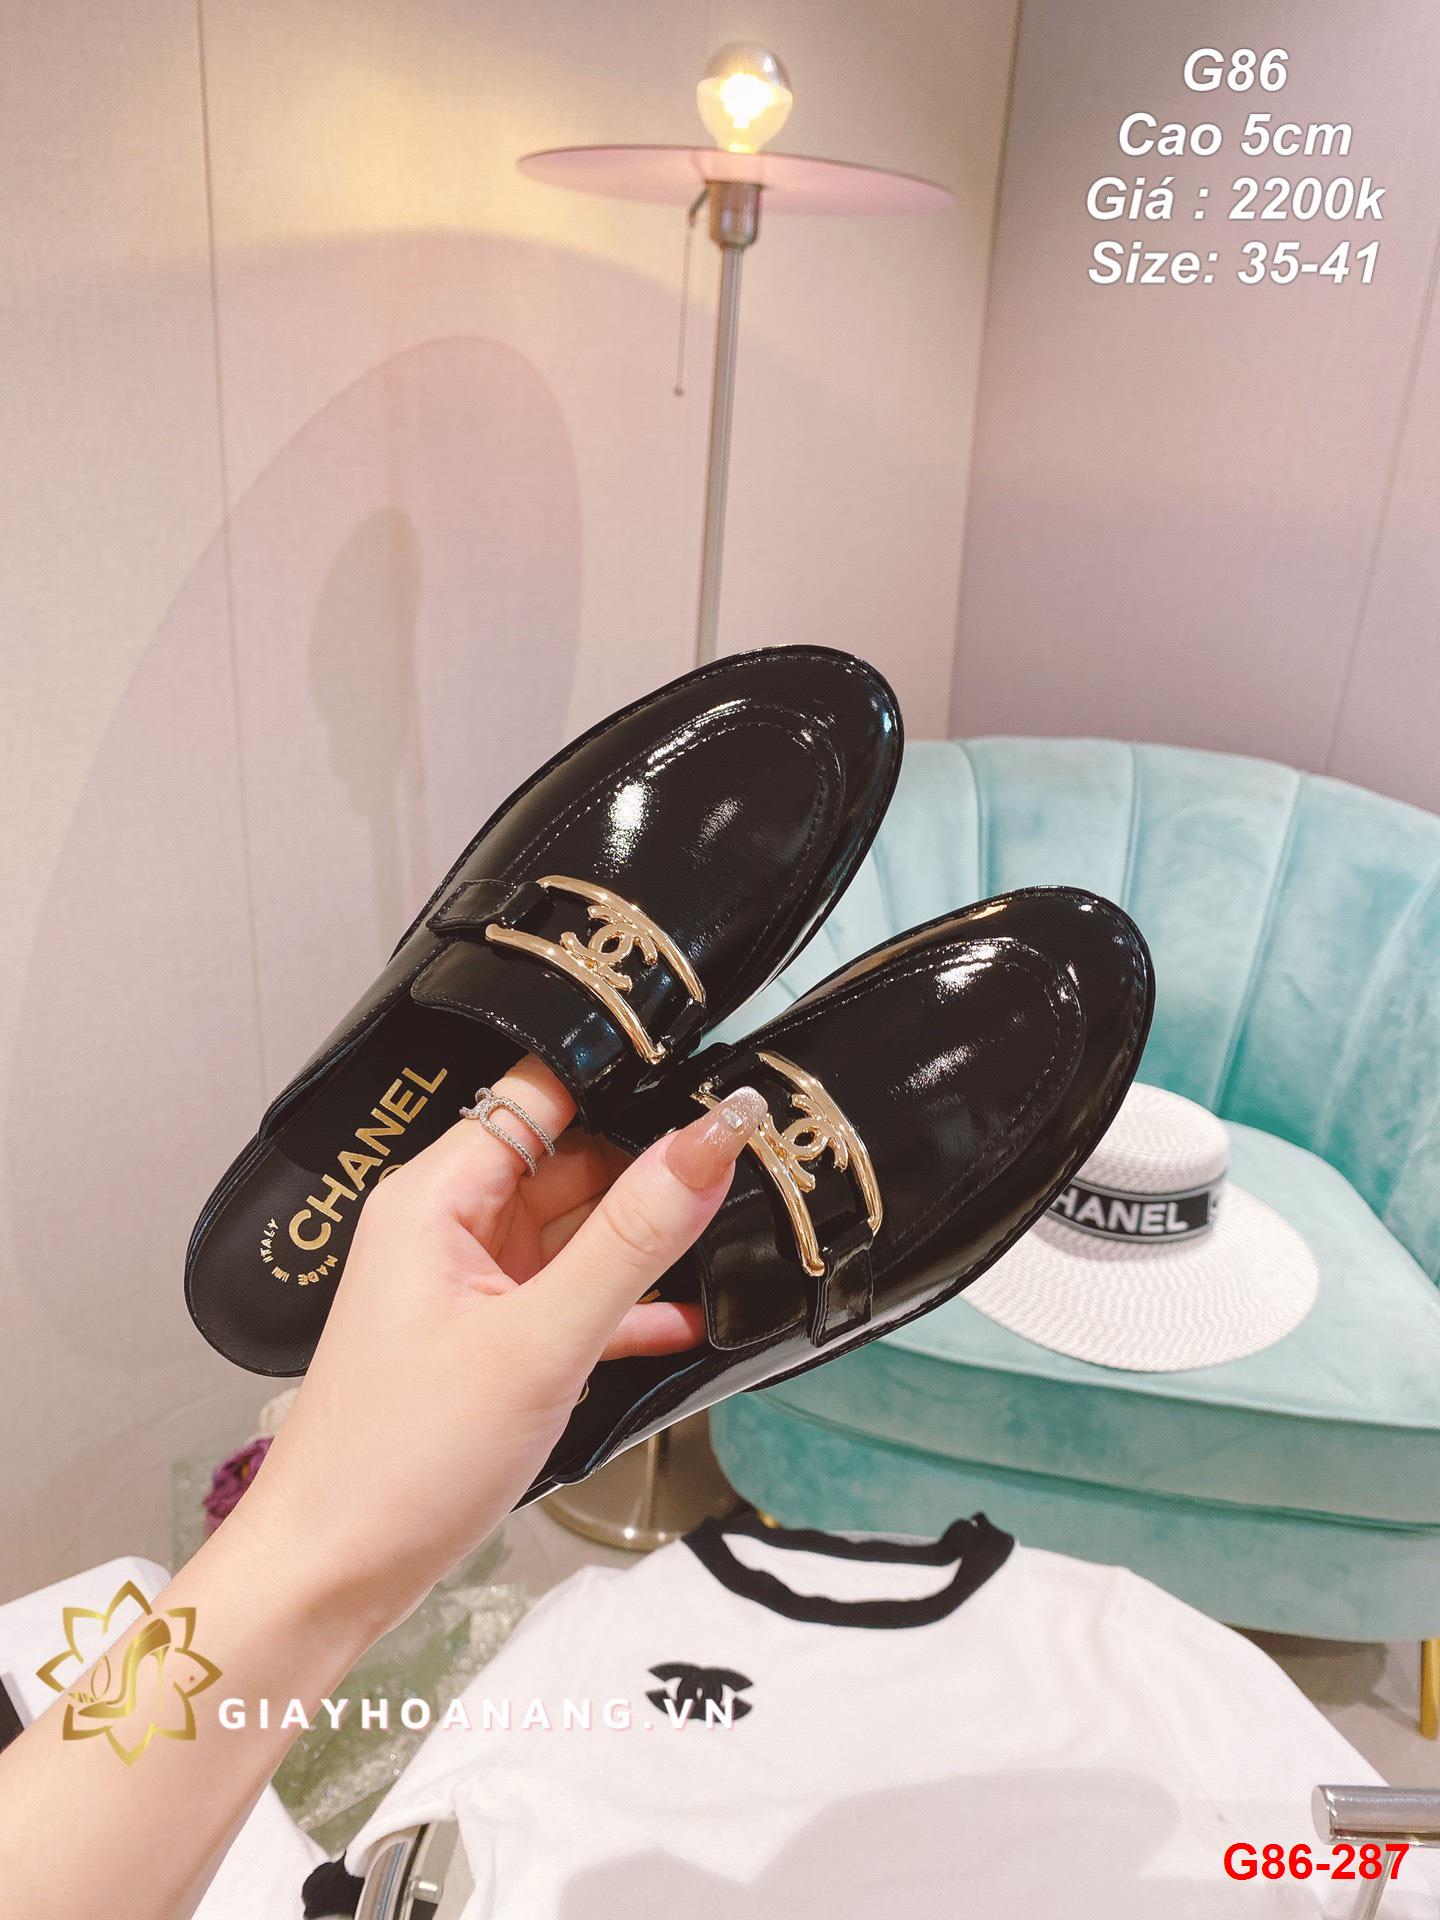 G86-287 Chanel giày cao 5cm siêu cấp